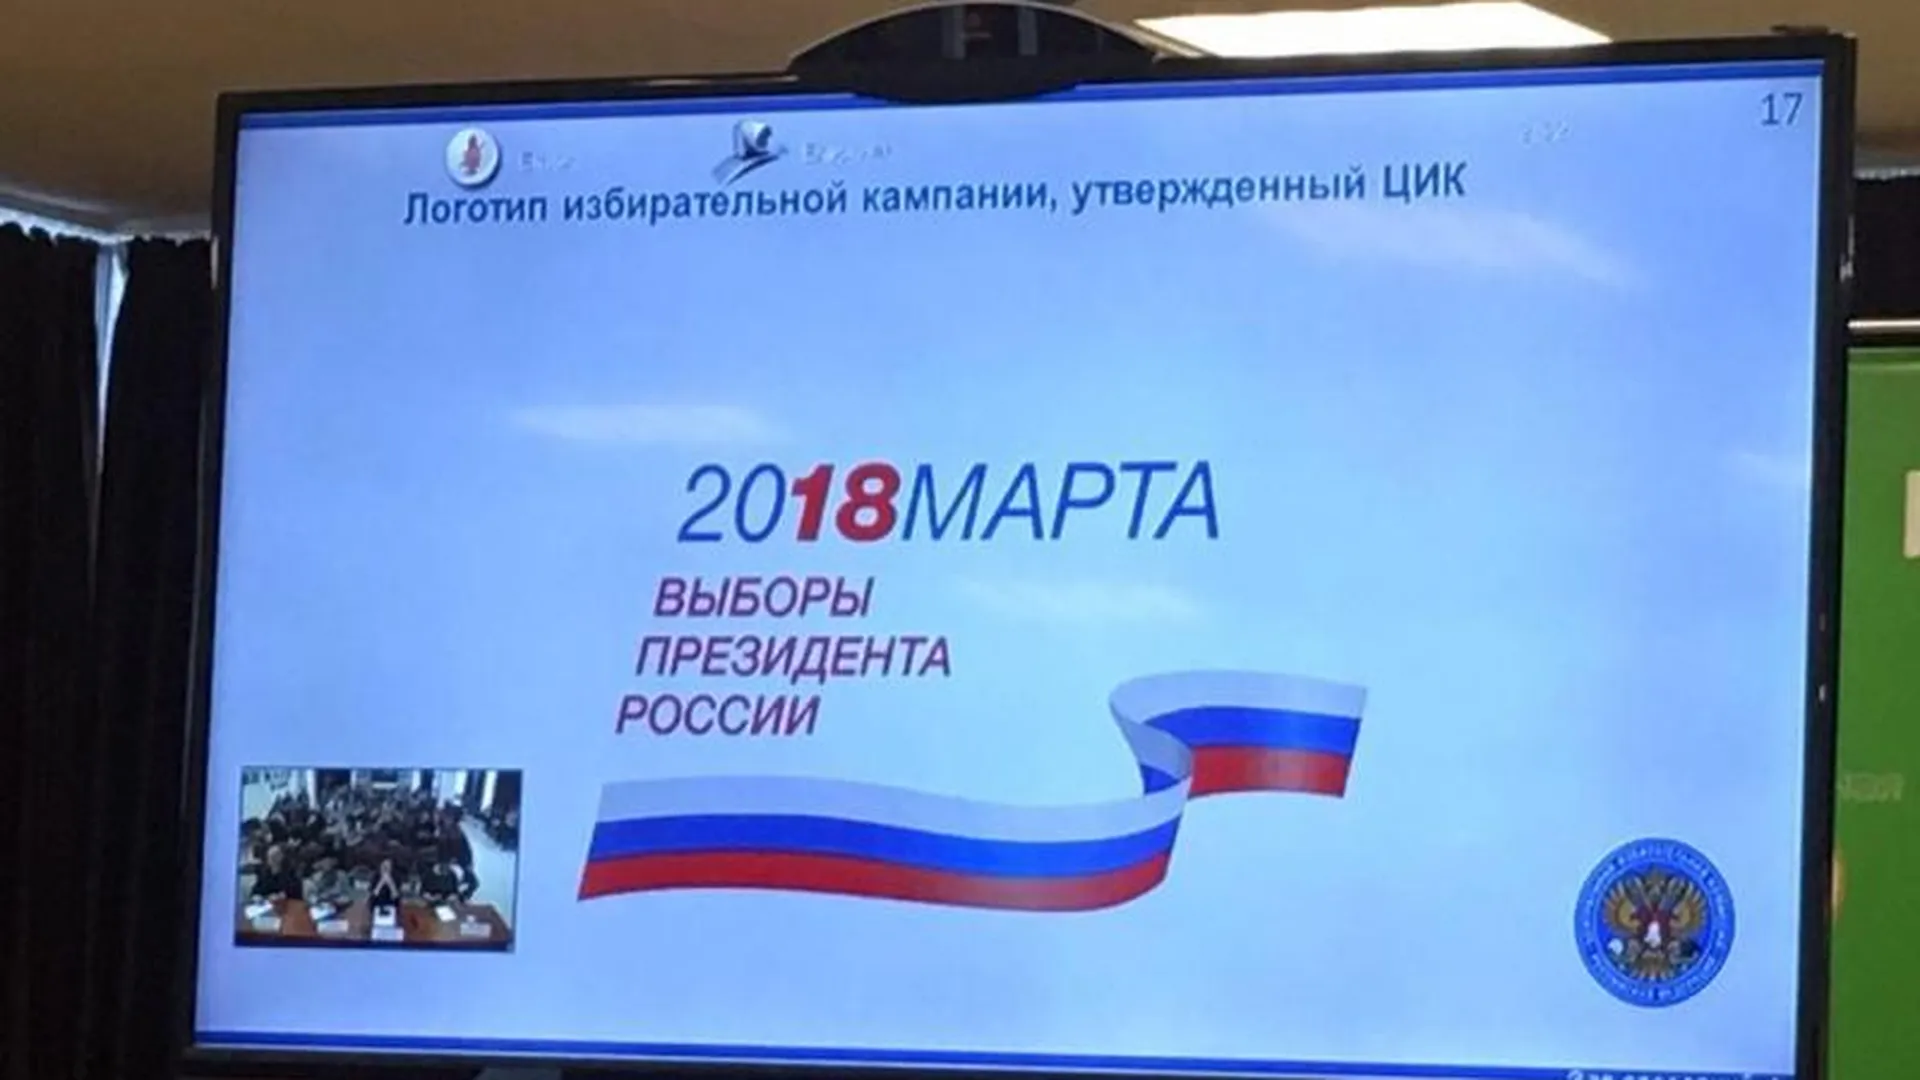 Обнародован логотип избирательной кампании президента России